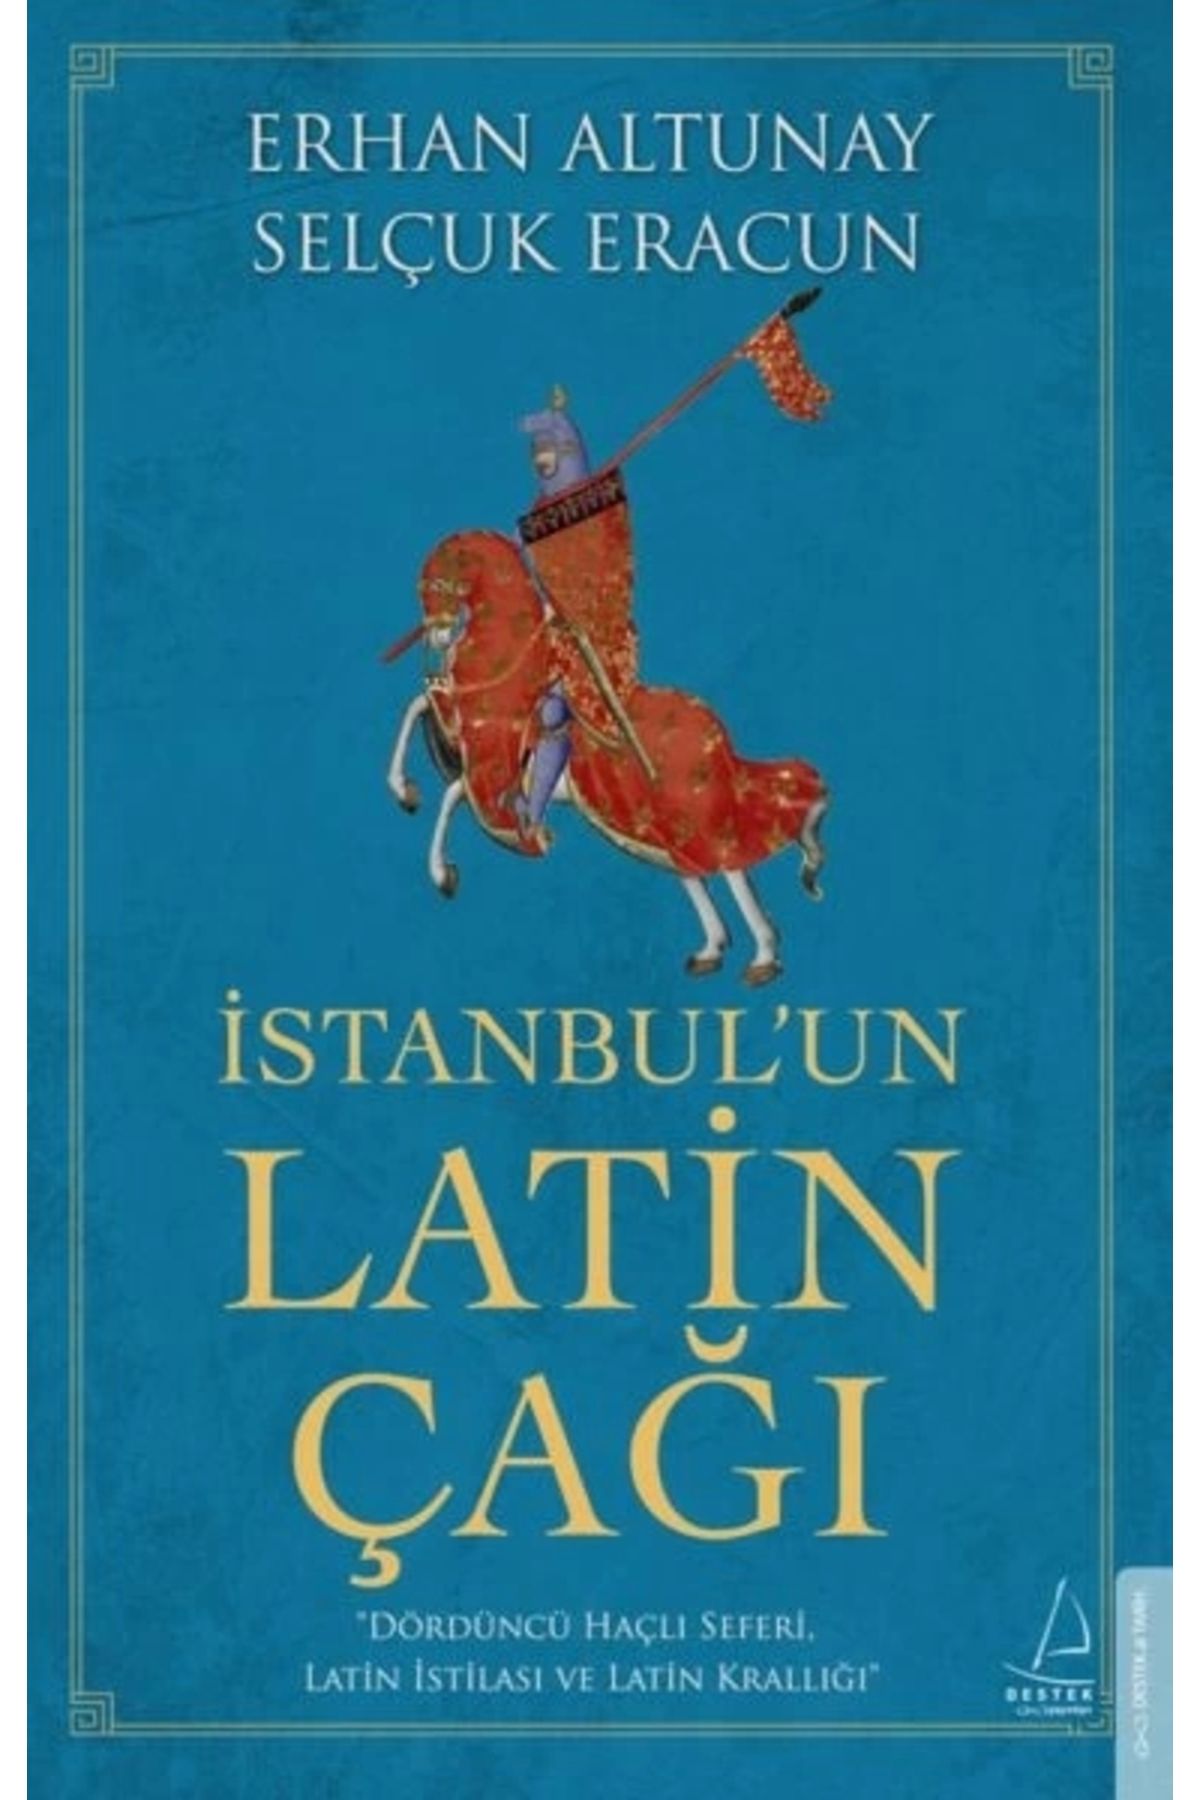 Destek Yayınları İstanbulun Latin Çağı